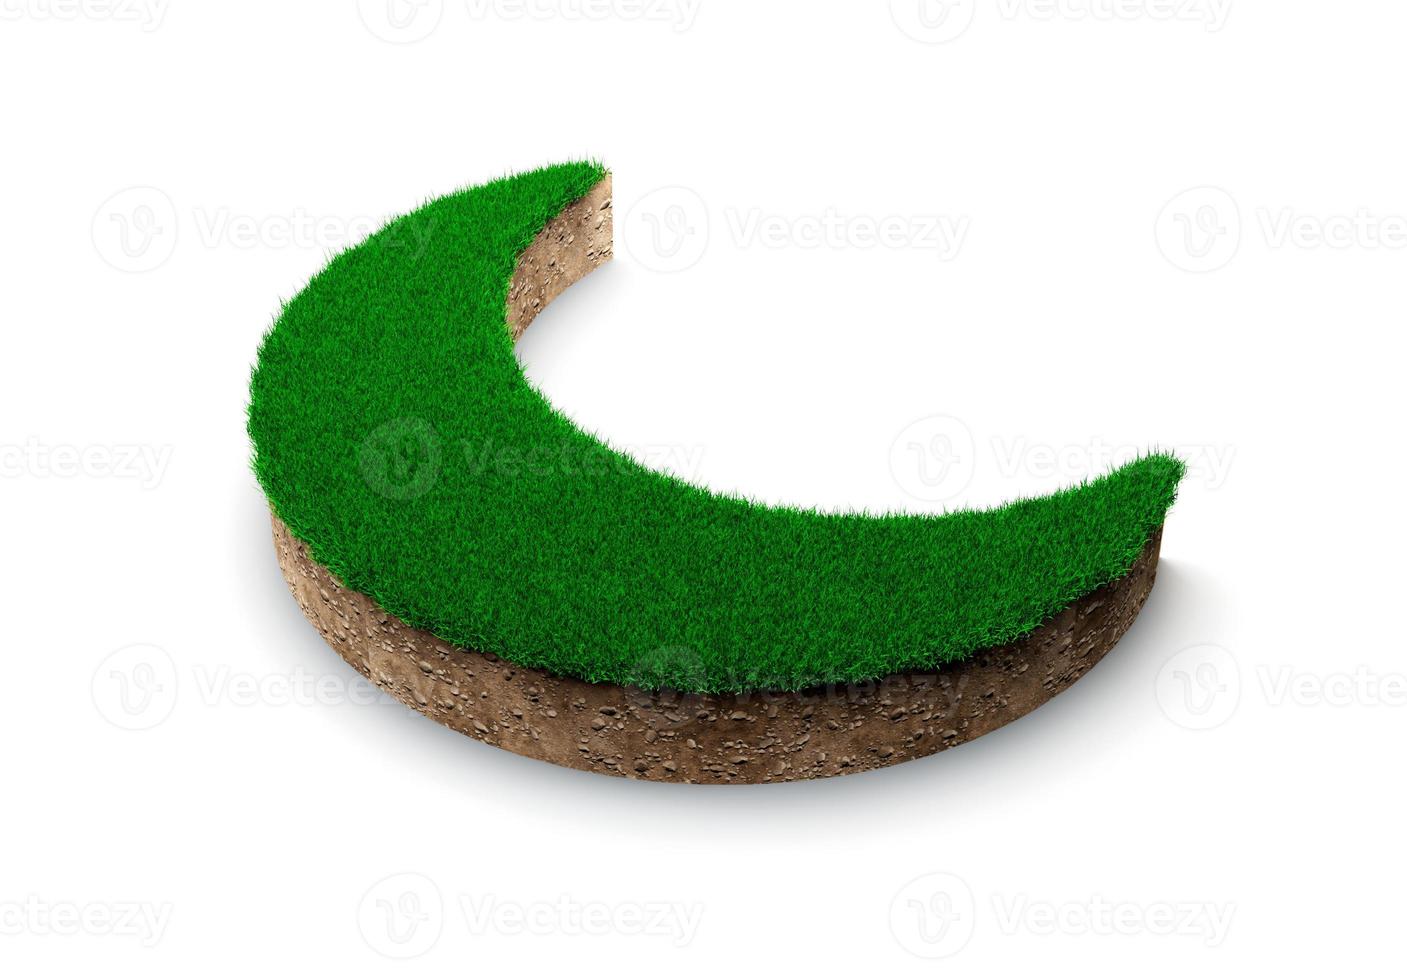 coupe transversale de la géologie des terres en forme de croissant de lune avec de l'herbe verte, de la boue de terre coupée illustration 3d isolée photo